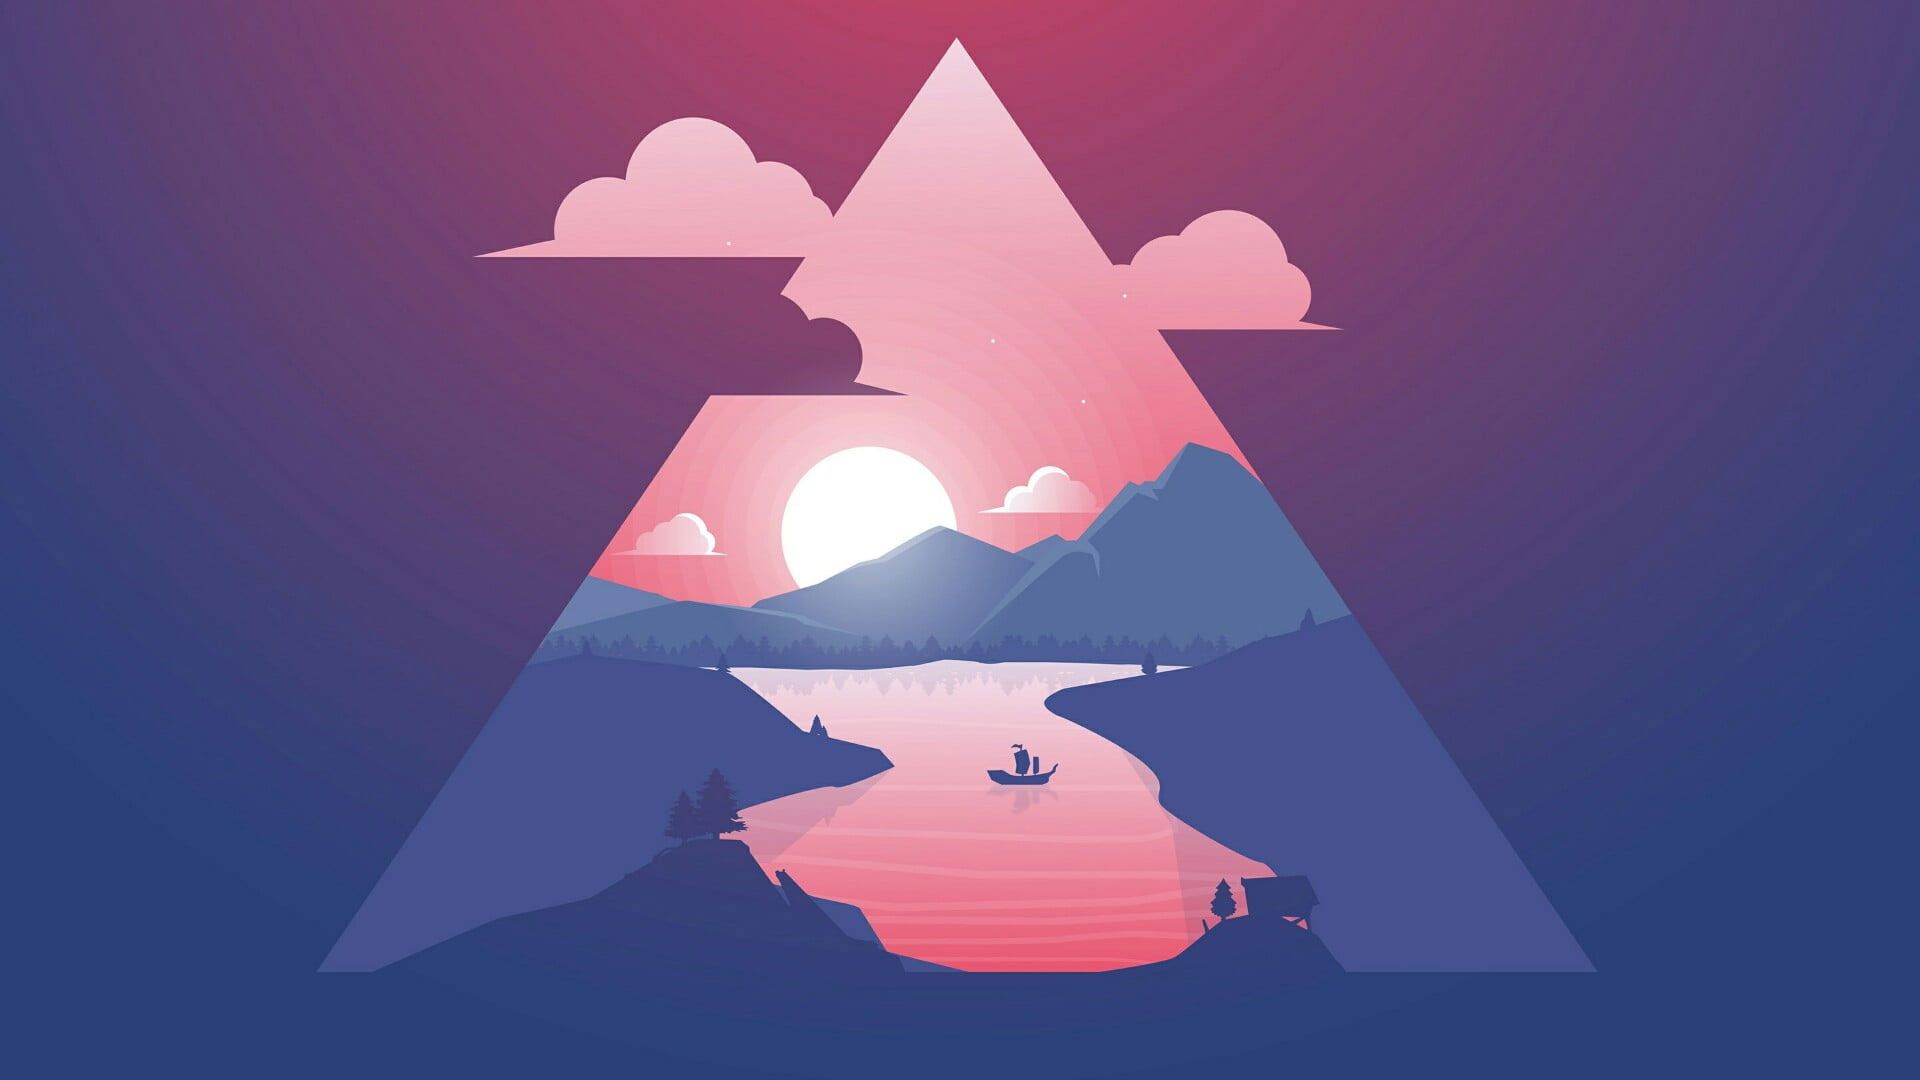 Sunset minimalist wallpaper, triangle, sky, art, minimal art, illustration in 2020